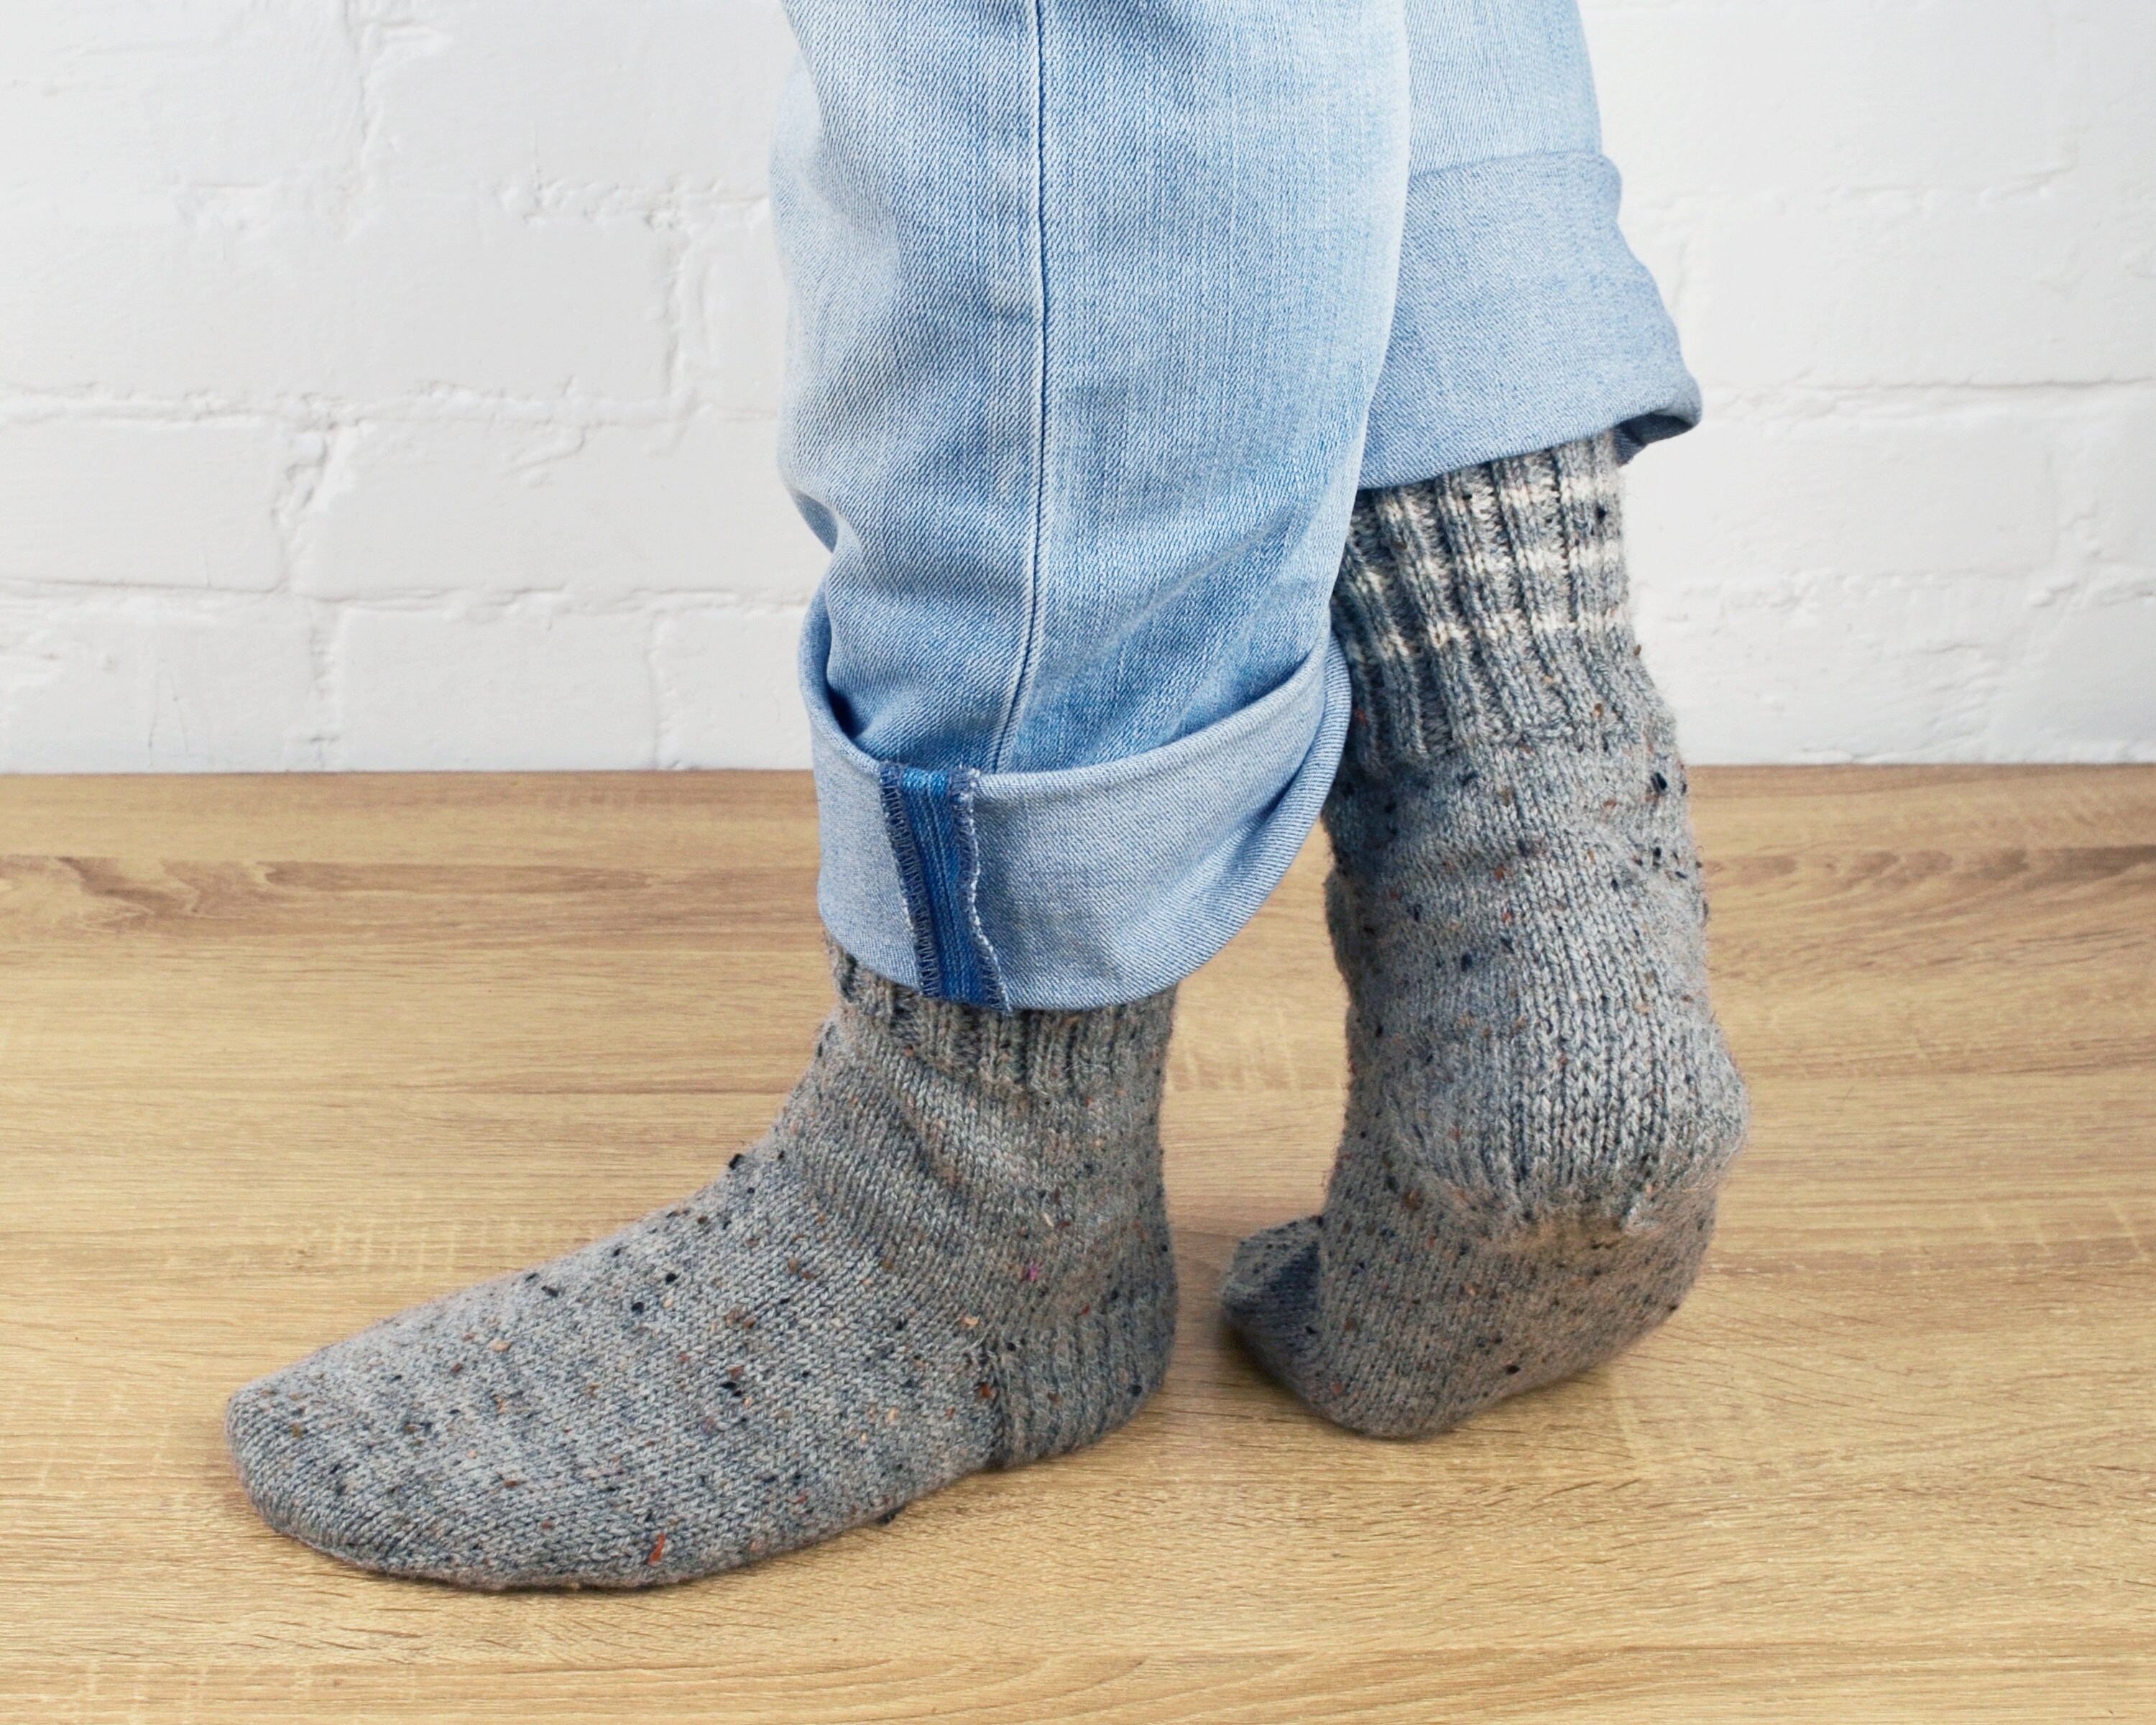 Gray wool hand knit socks for men Cozy warm winter hygge | Etsy